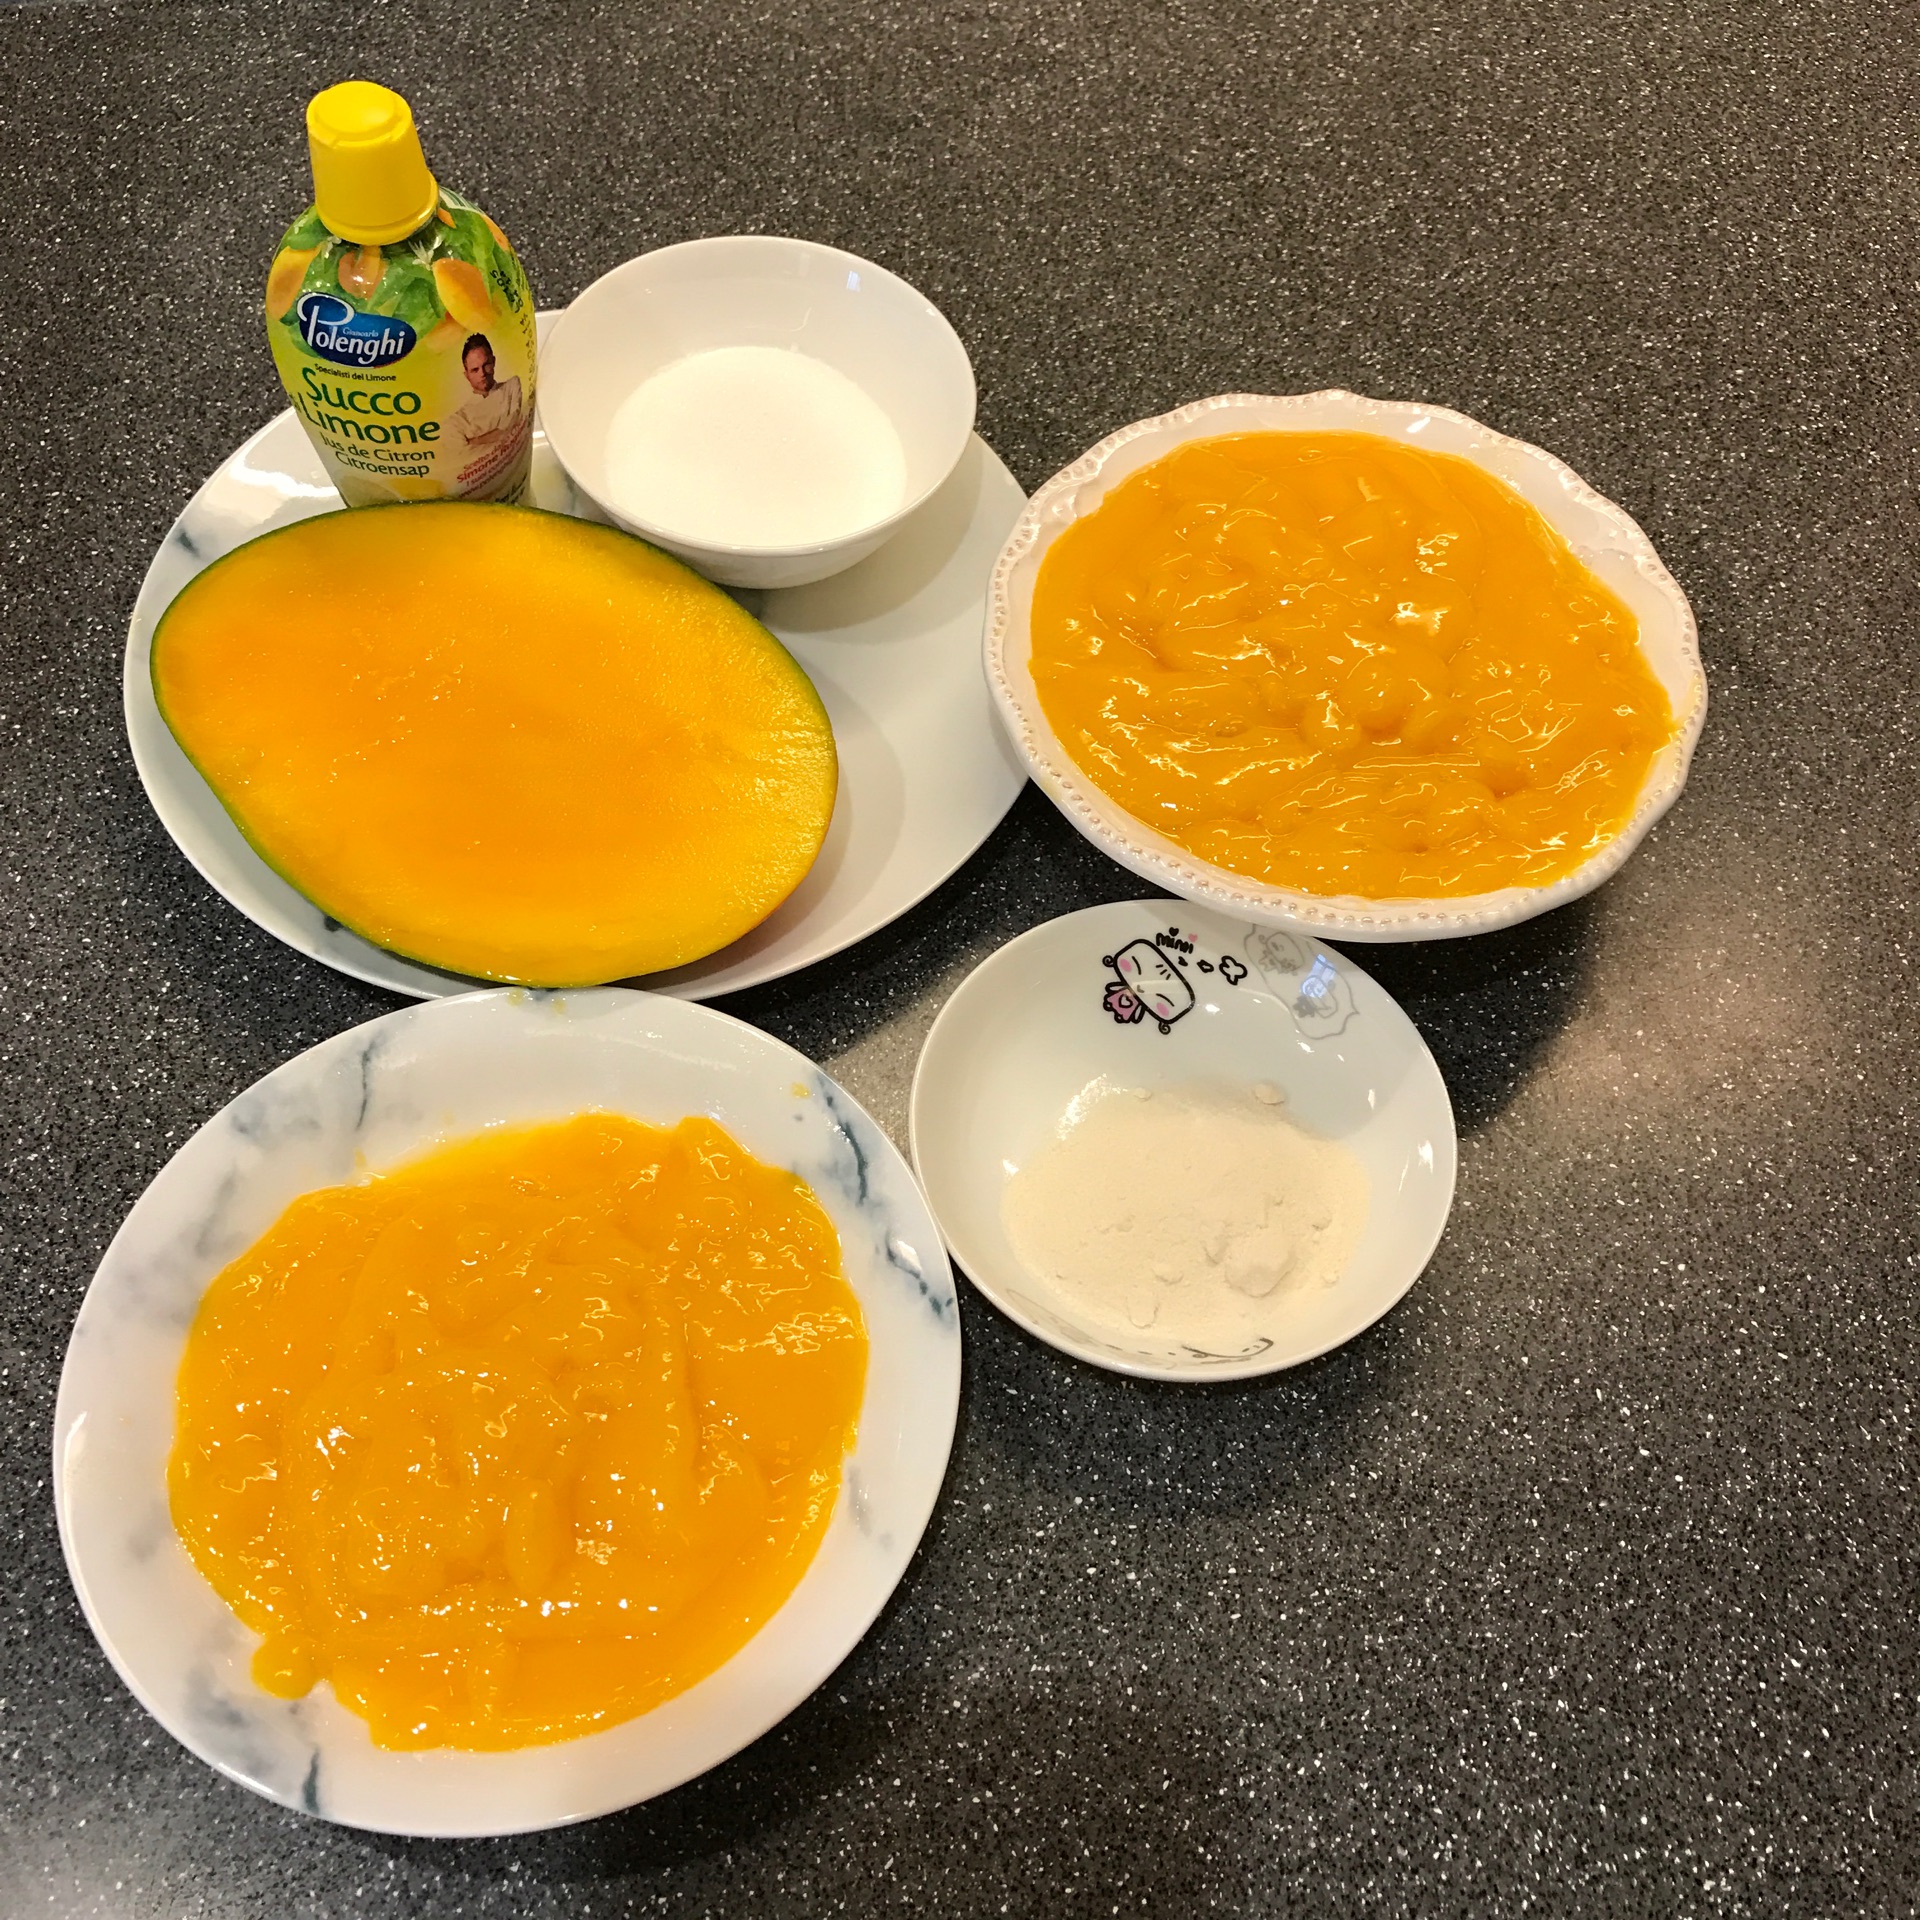 酸奶芒果杯的做法_酸奶芒果杯怎么做_飘雪的季节_美食杰